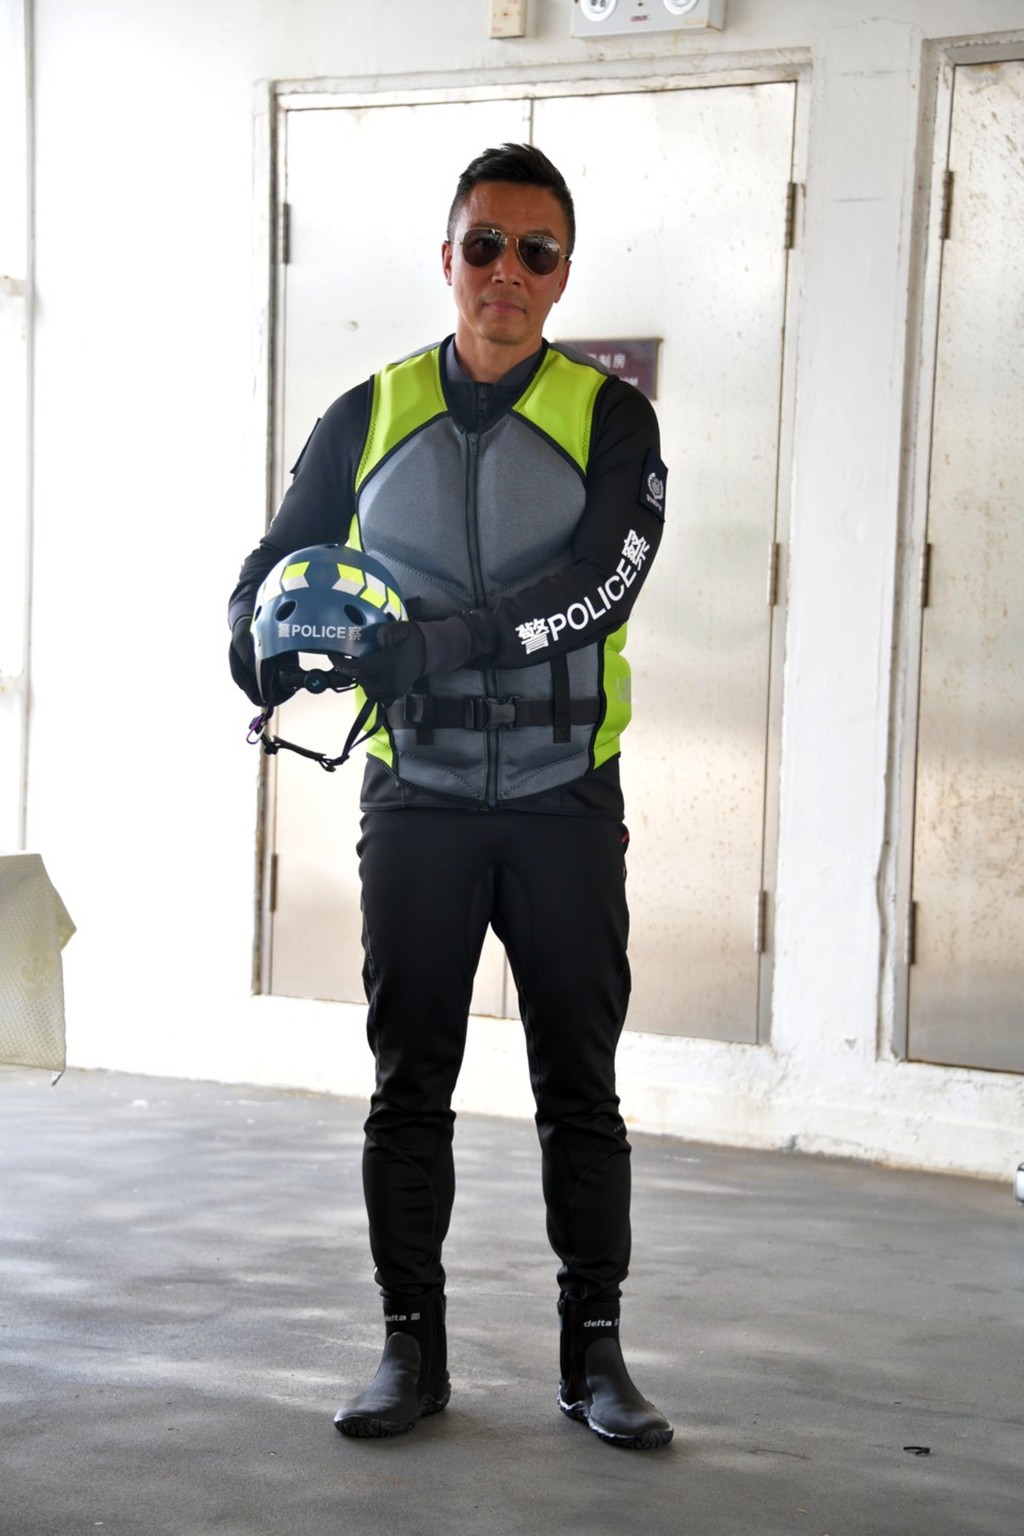 操作水上電單車的人員配備防護頭盔，以及專業潛水衣及褲，確保人員在水中保持體溫，又配備保護鞋及手套防範被割傷。 楊偉亨攝